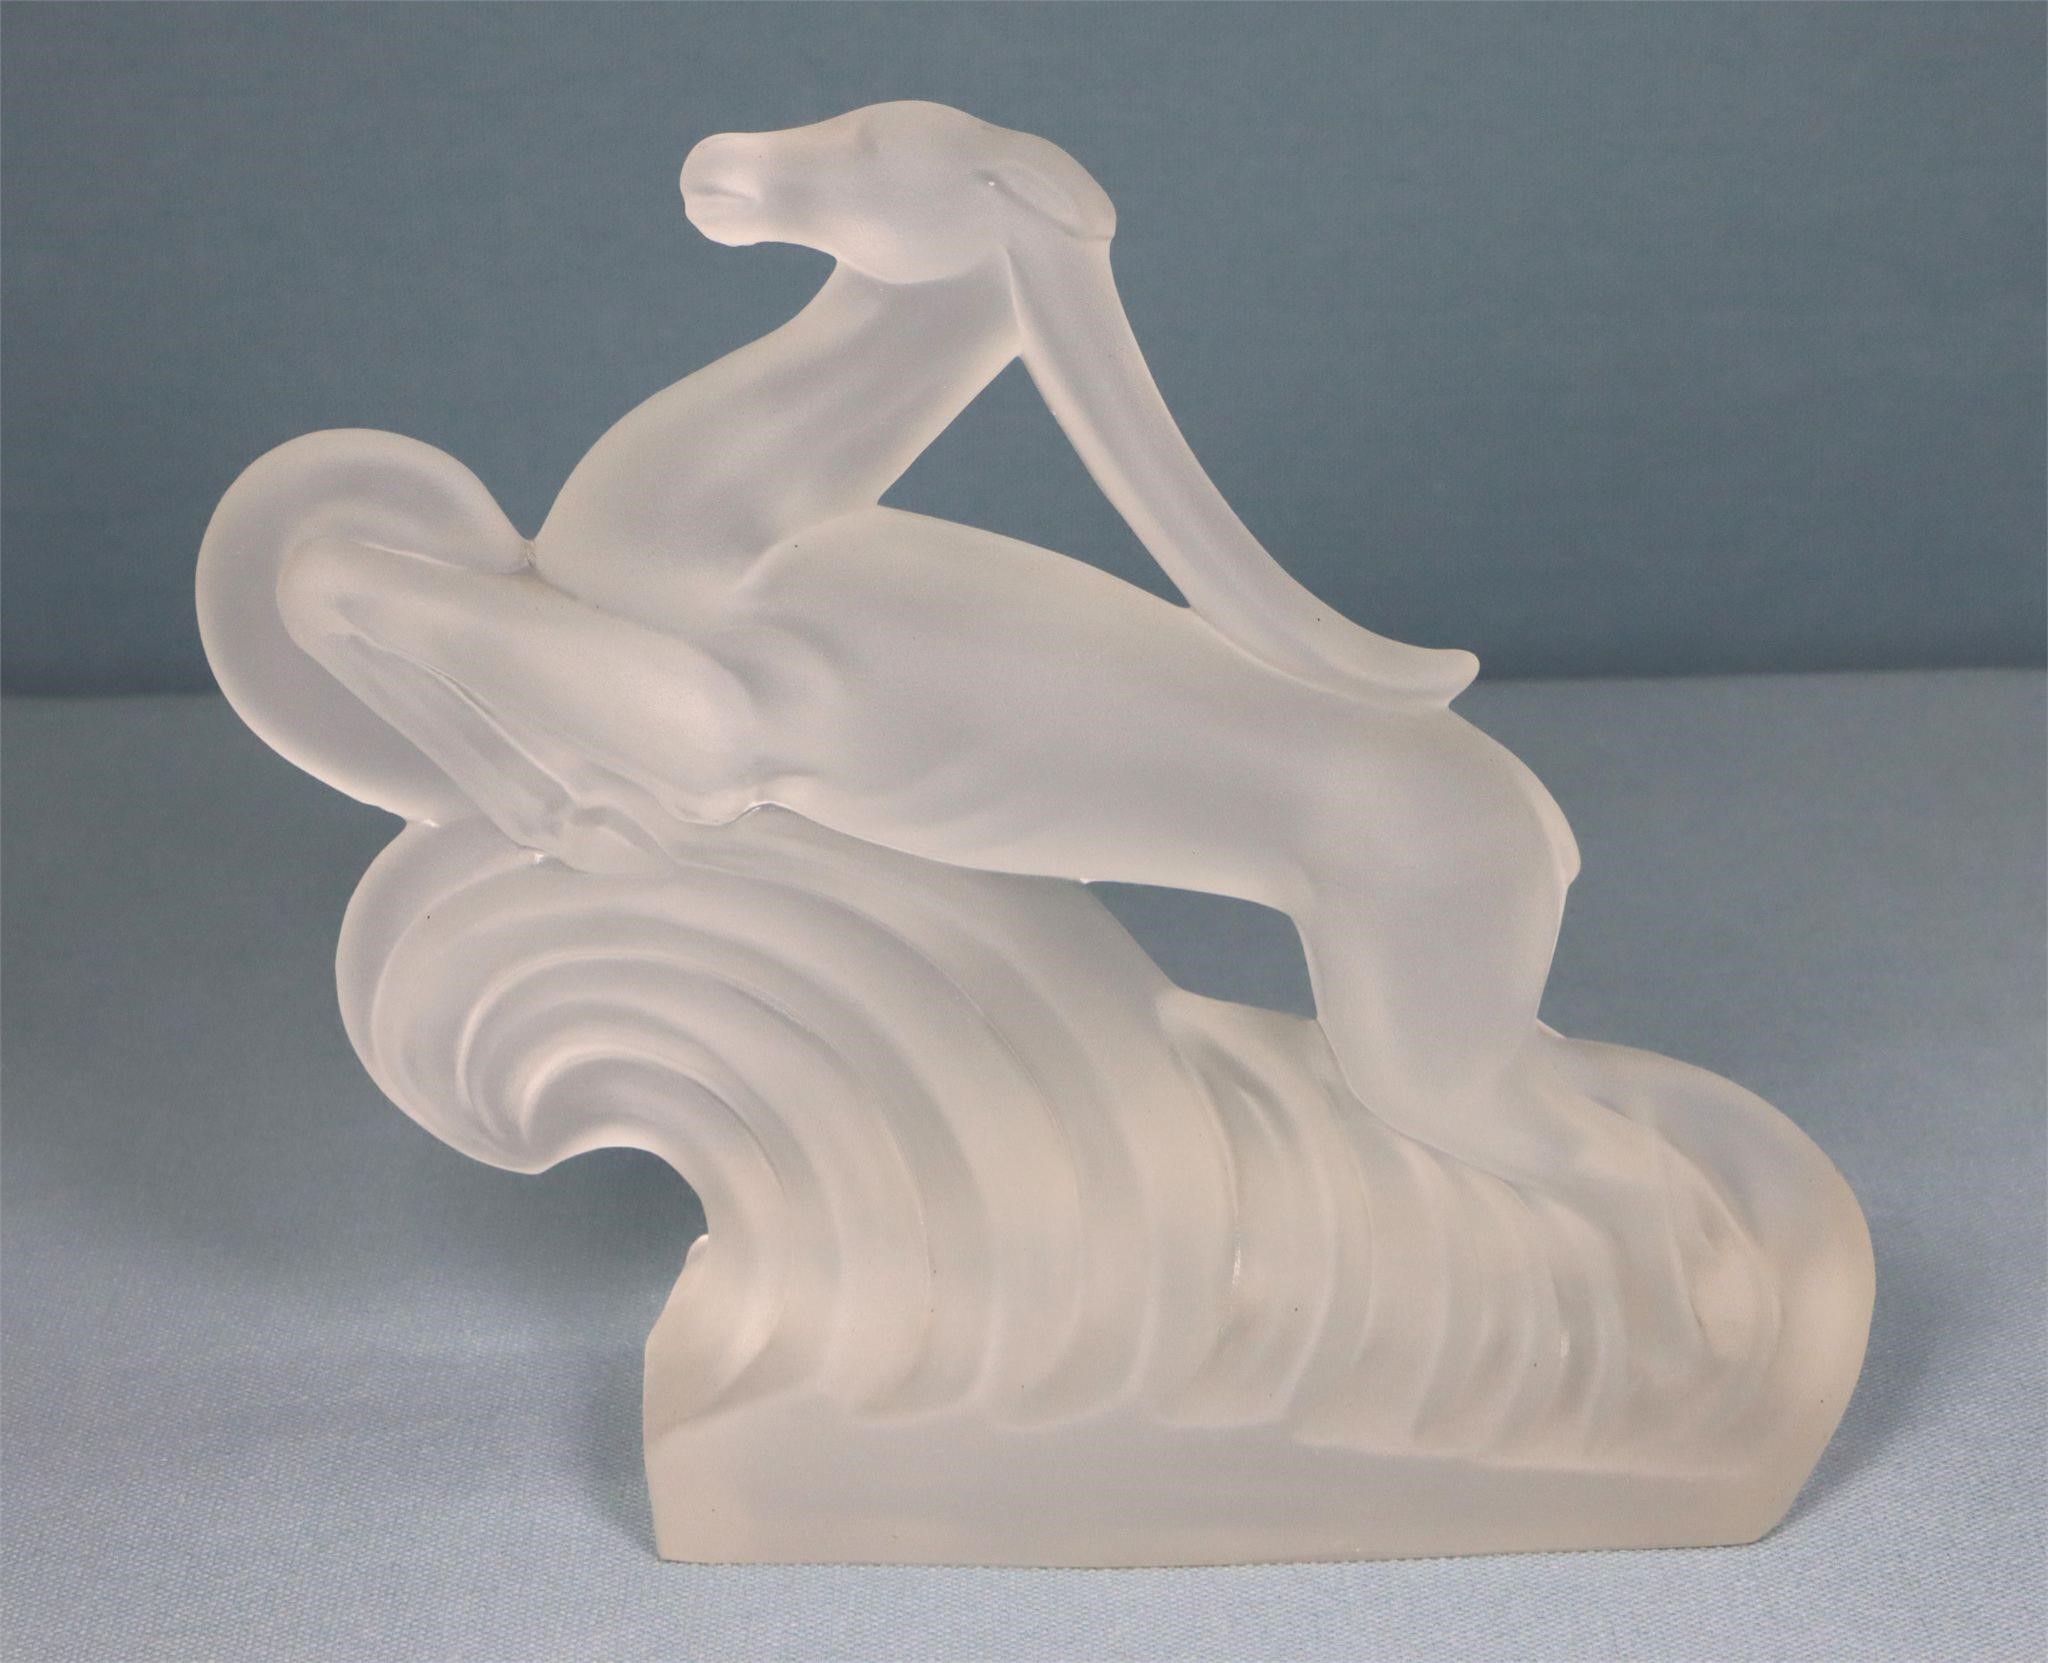 Steuben Glass Gazelle Sculpture